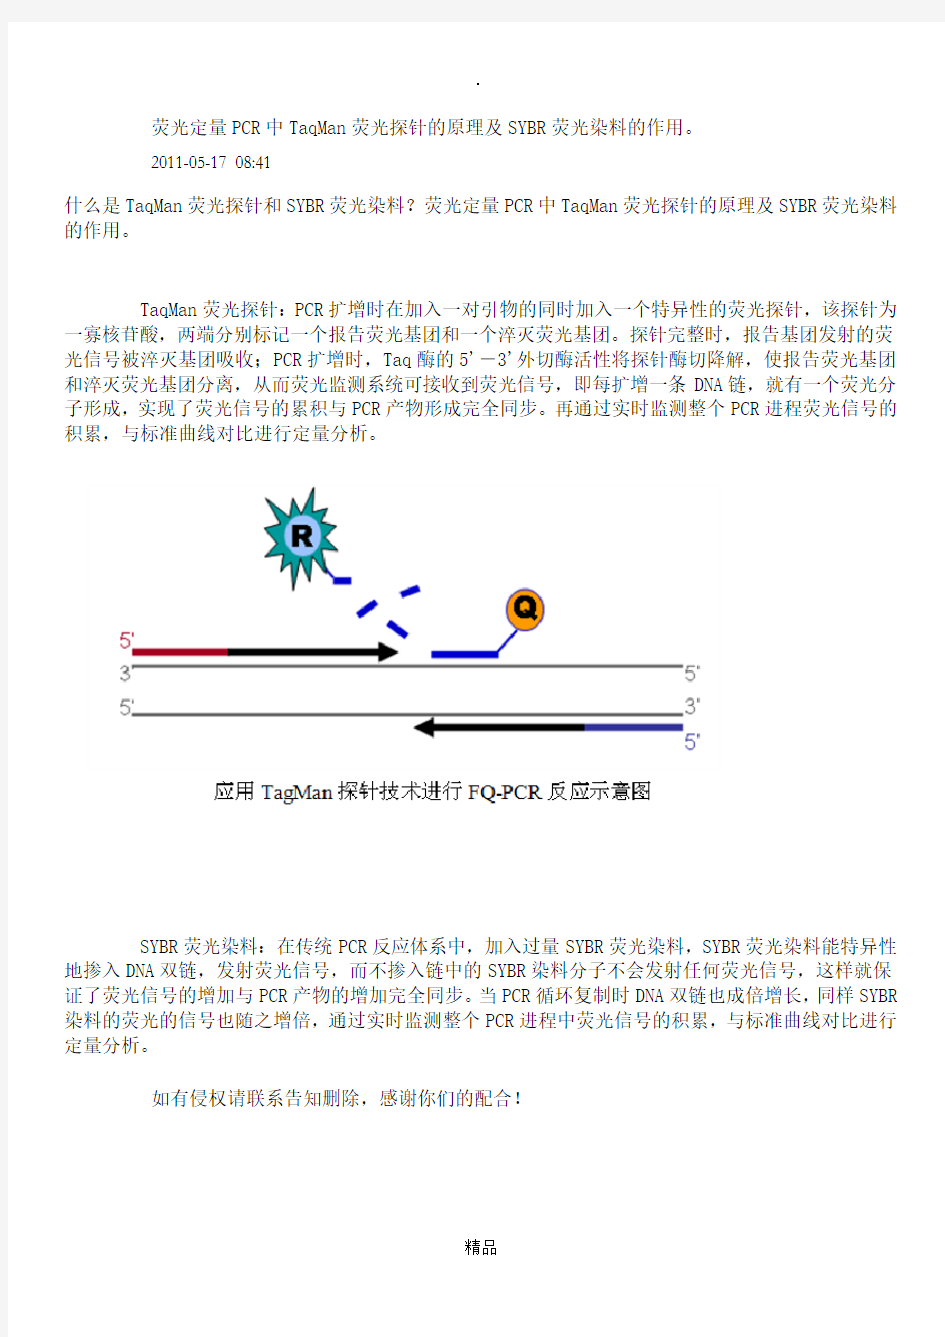 荧光定量PCR中TaqMan荧光探针的原理及SYBR荧光染料的作用。